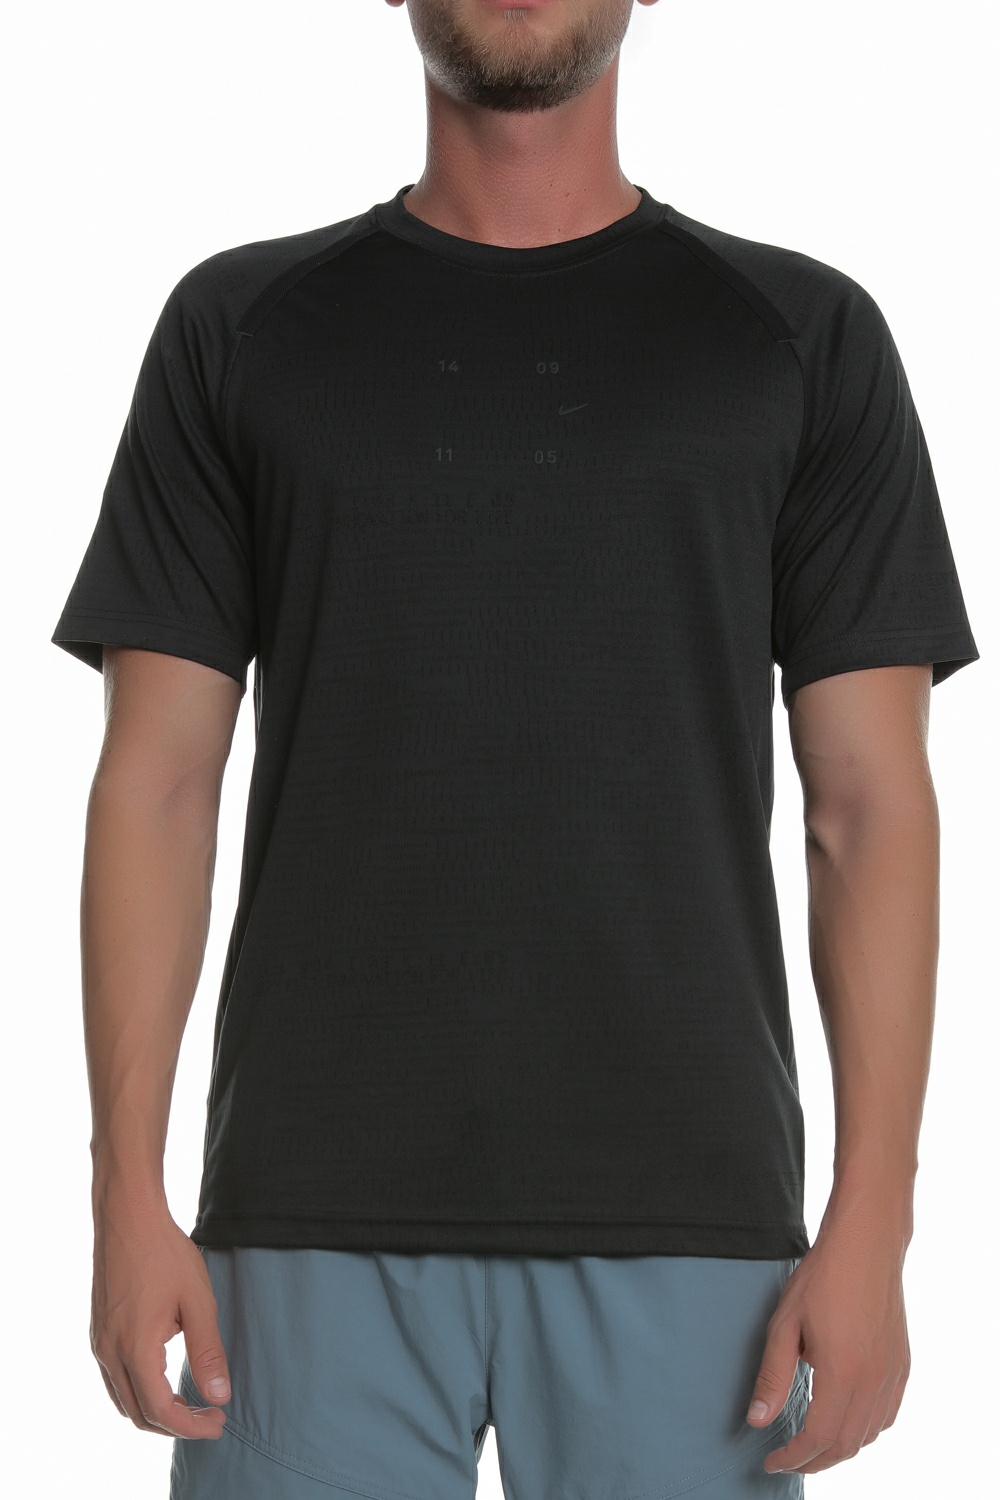 Ανδρικά/Ρούχα/Αθλητικά/T-shirt NIKE - Ανδρική αθλητική μπλούζα NIKE NSW TCH PCK TOP μαύρη